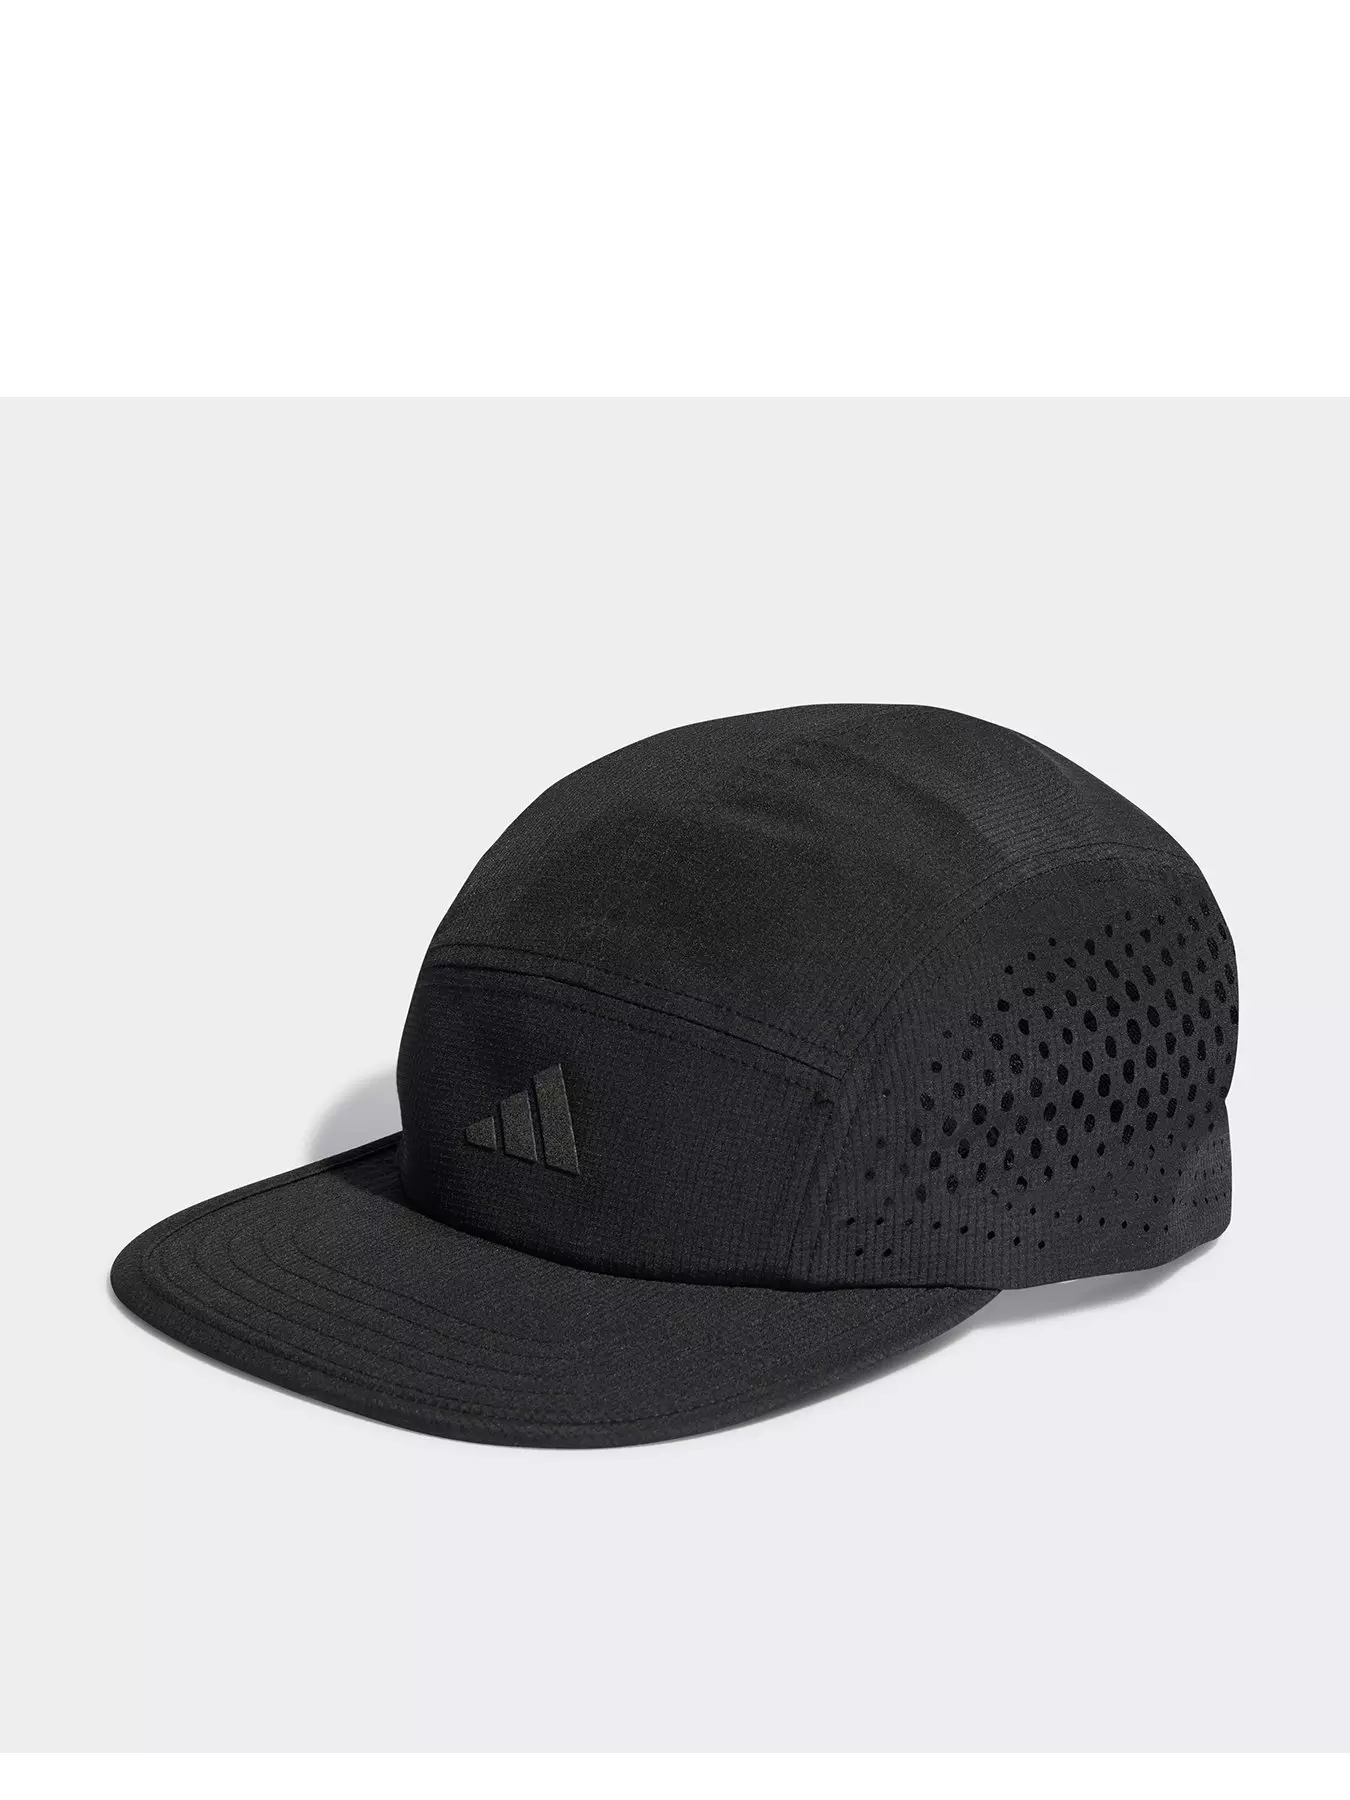 | Men | Accessories | Adidas Caps hats &